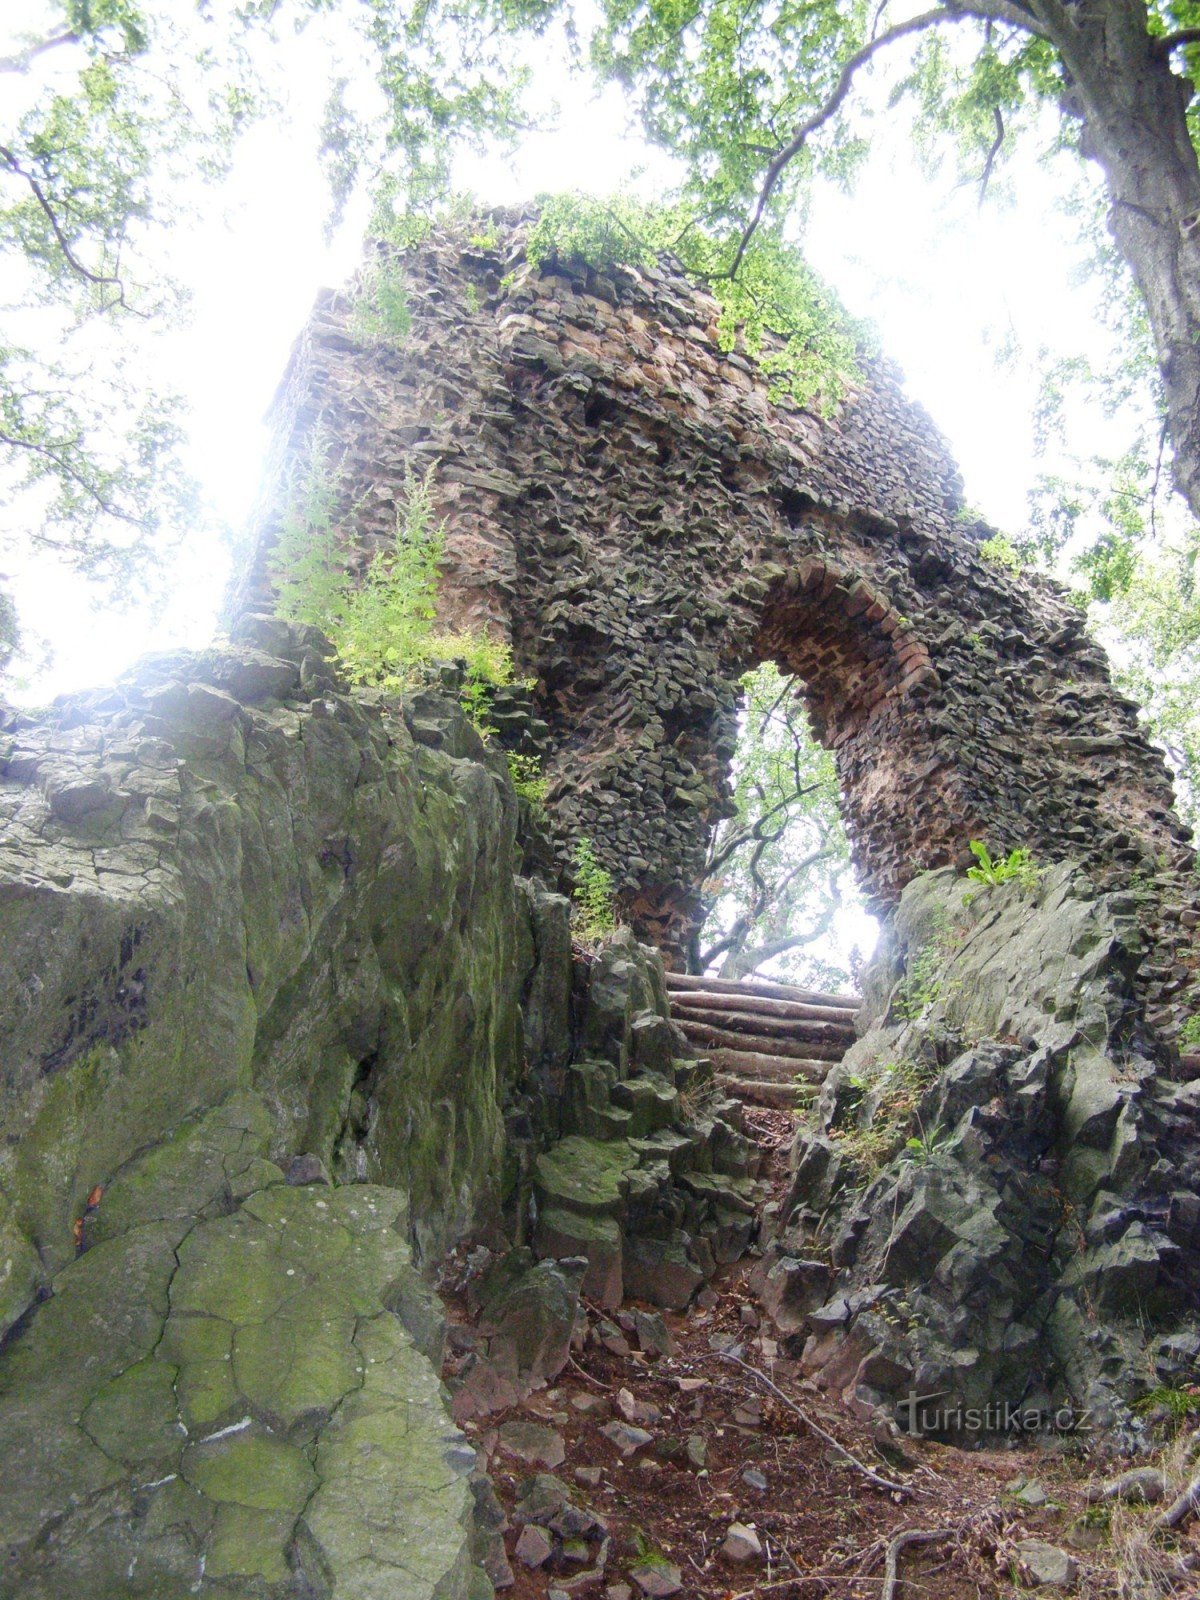 τα ερείπια του κάστρου Bradlec